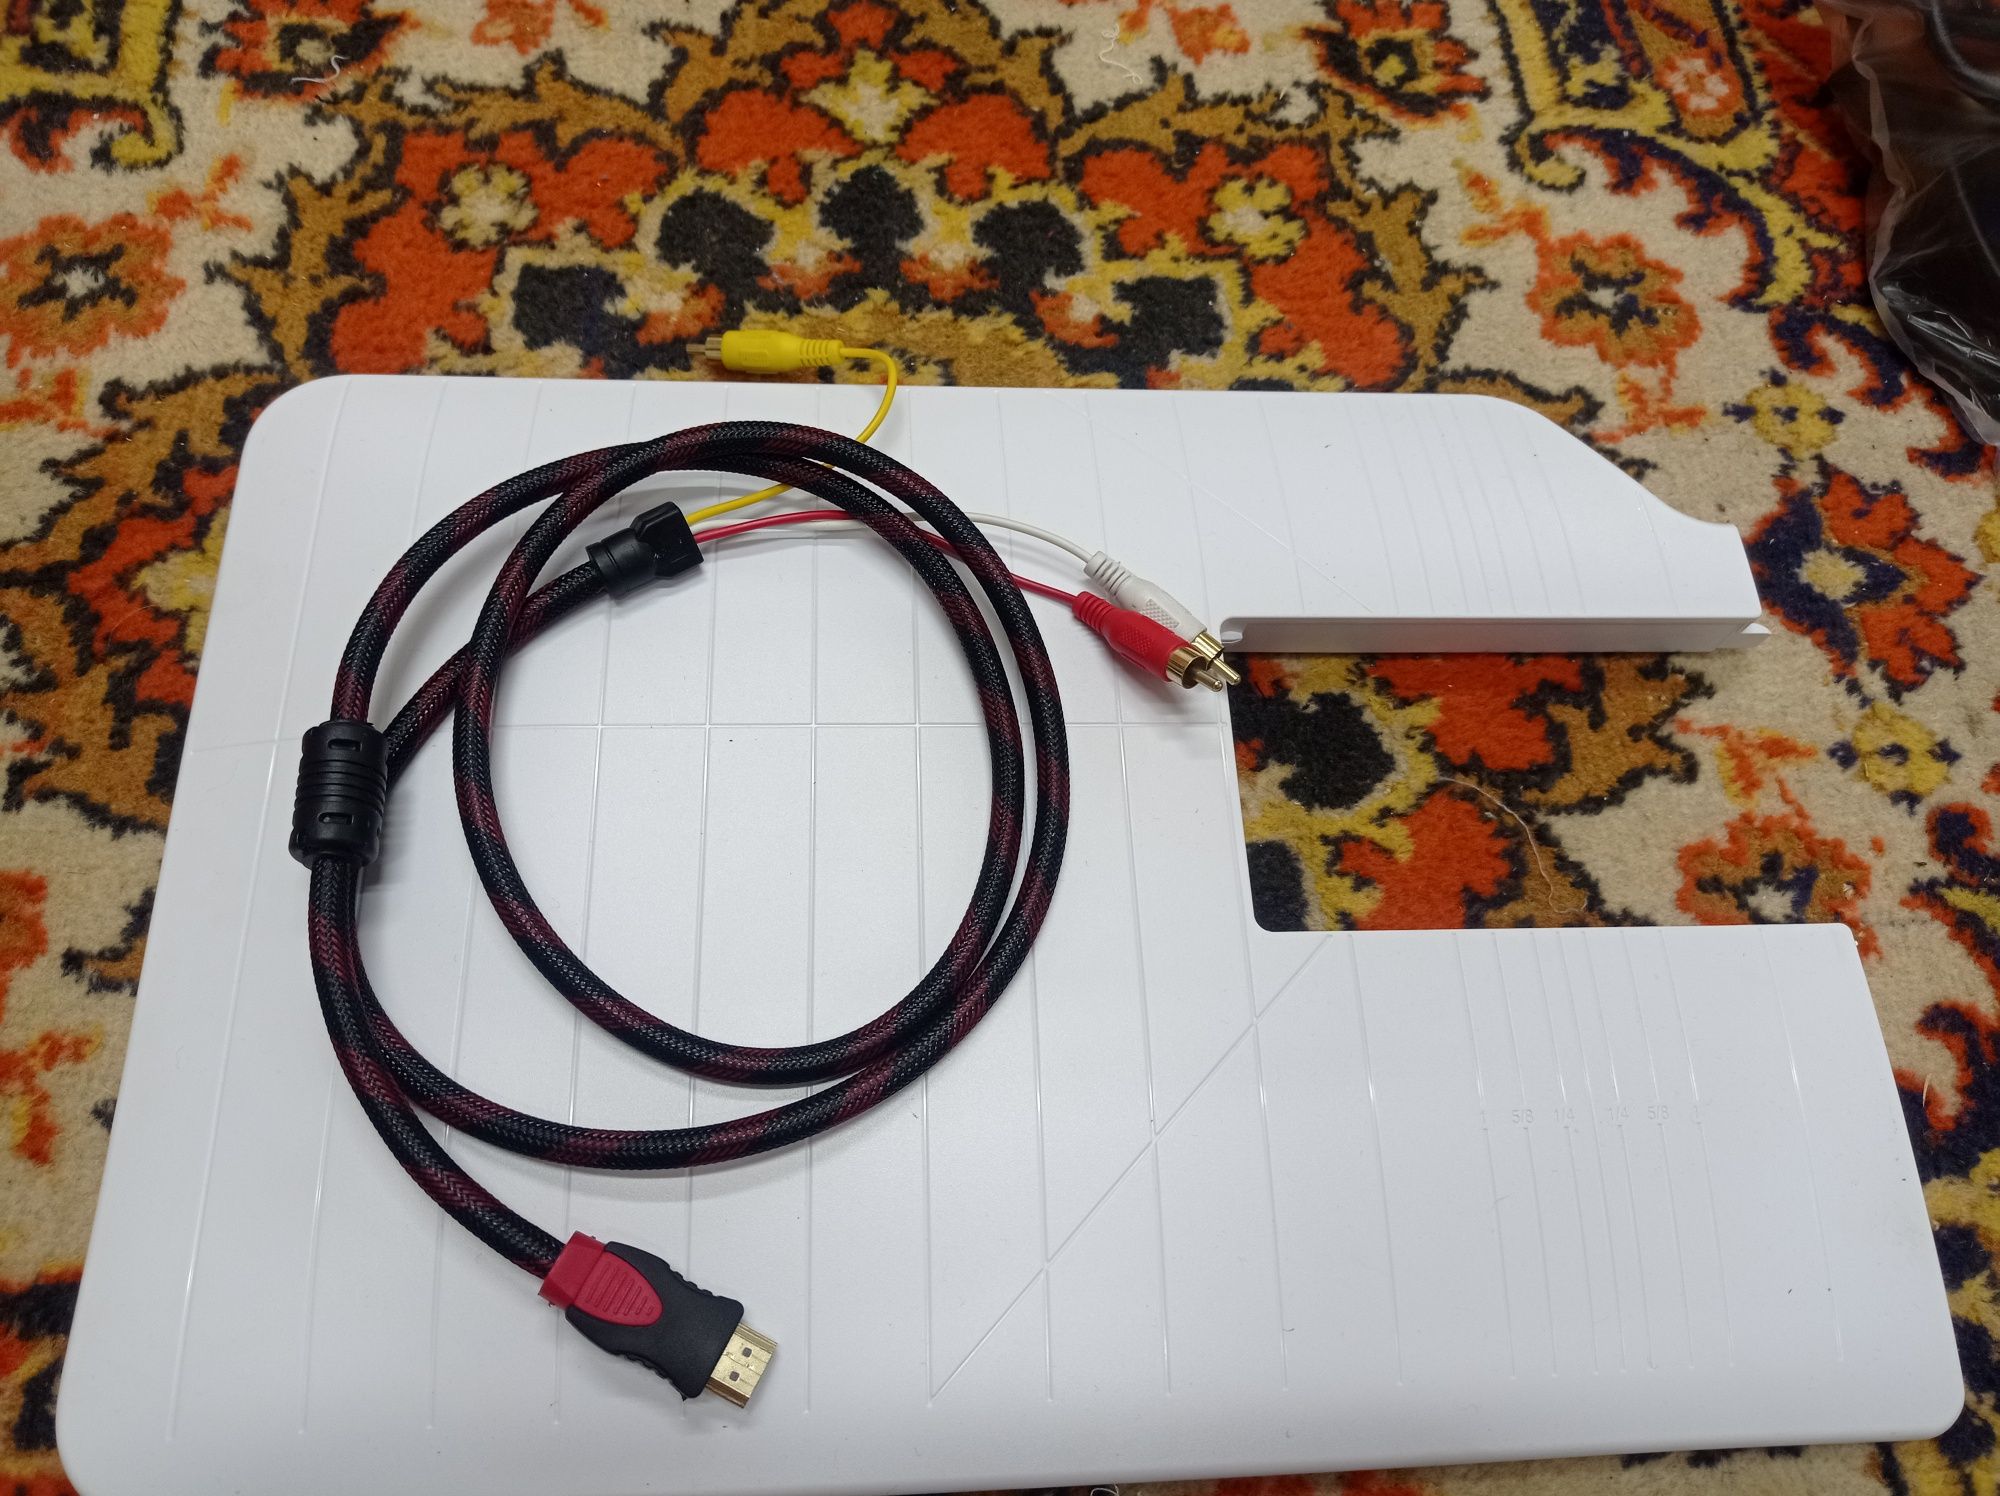 Различные шнуры, USB, HDMI, переходники, интернет кабель